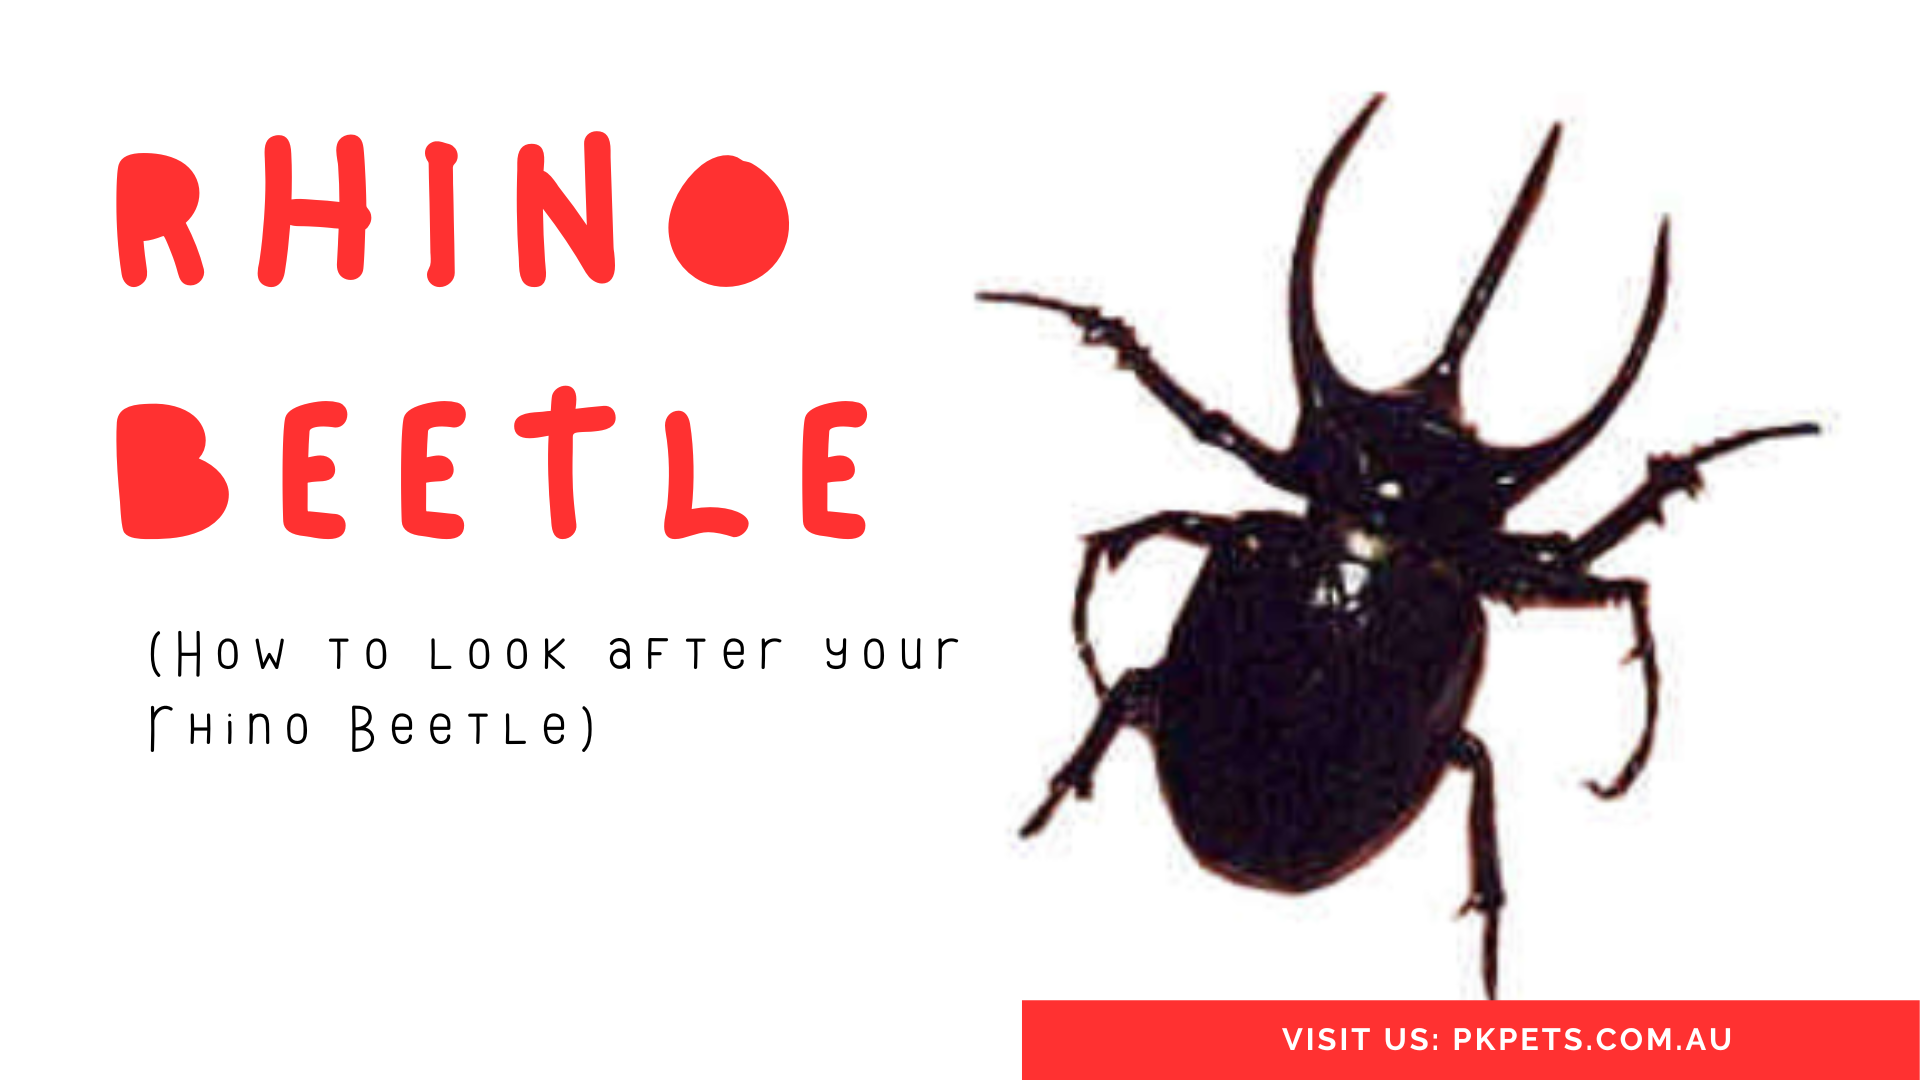 Rhino Beetle Care